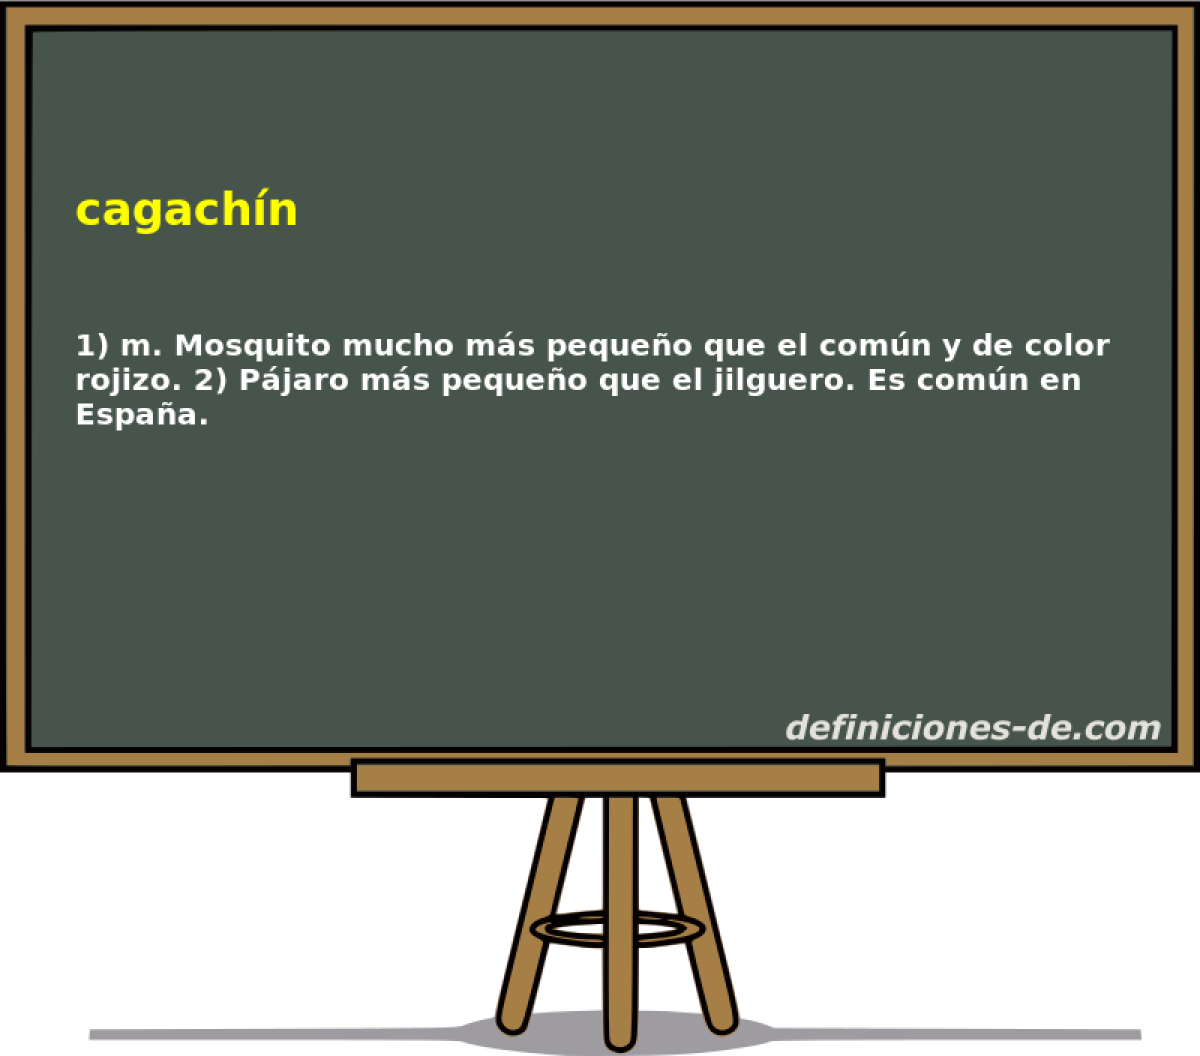 cagachn 